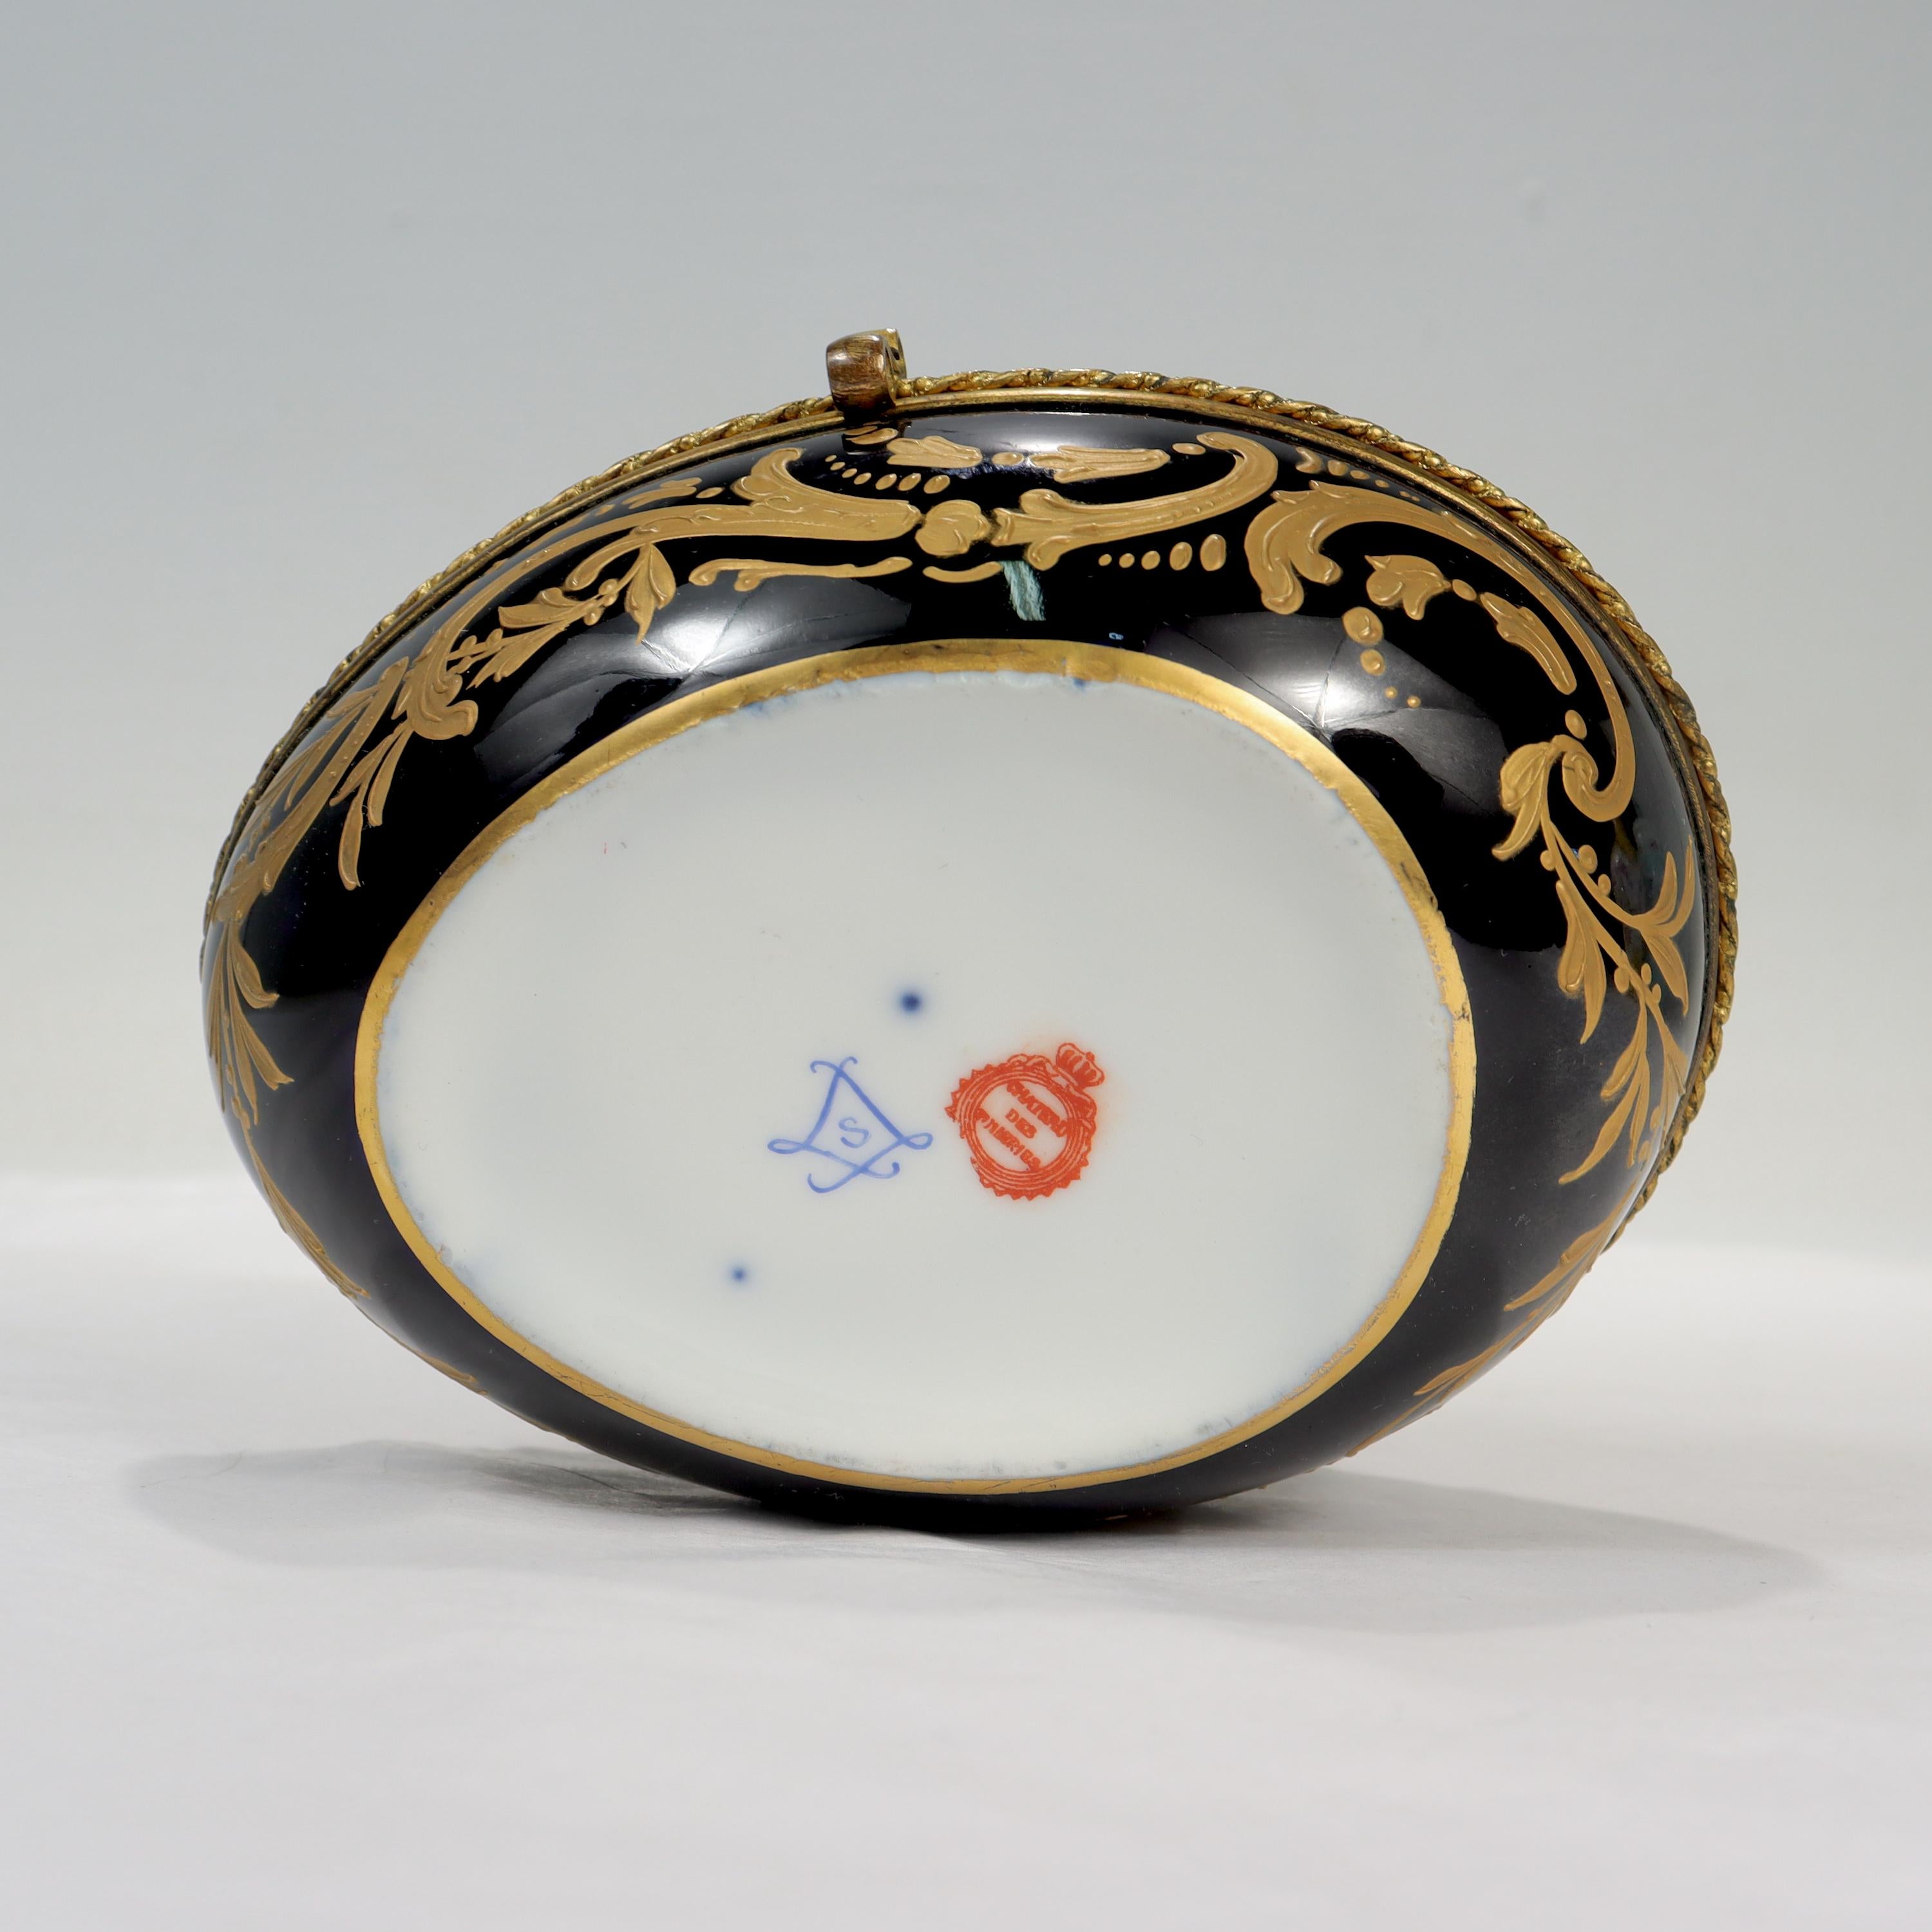 Antique Chateau Des Tuileries Sevres Type Porcelain Hand Painted Dresser Box For Sale 5